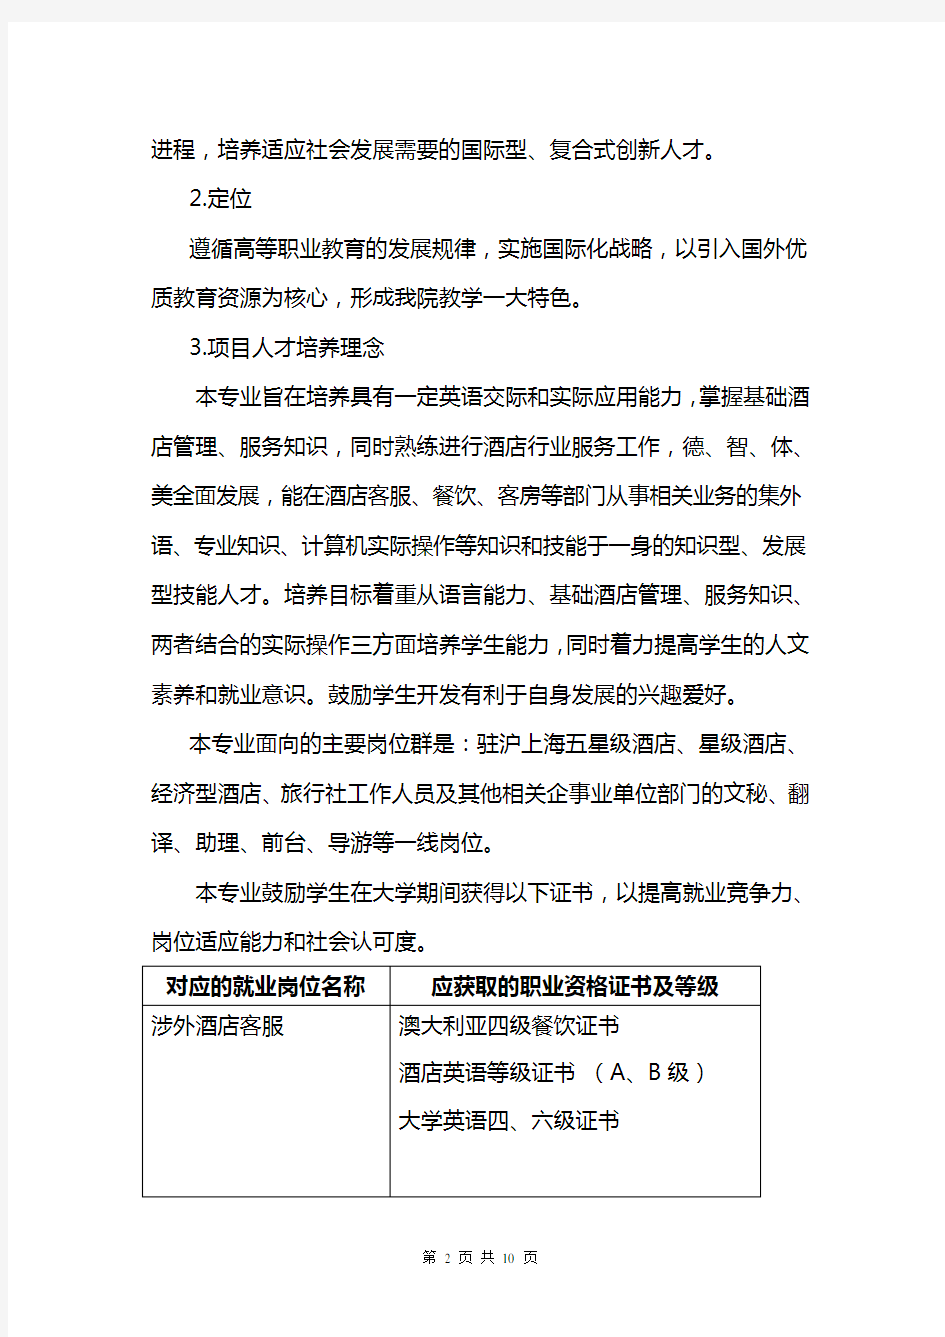 上海行健职业学院旅游管理(中澳合作)专业自评报告